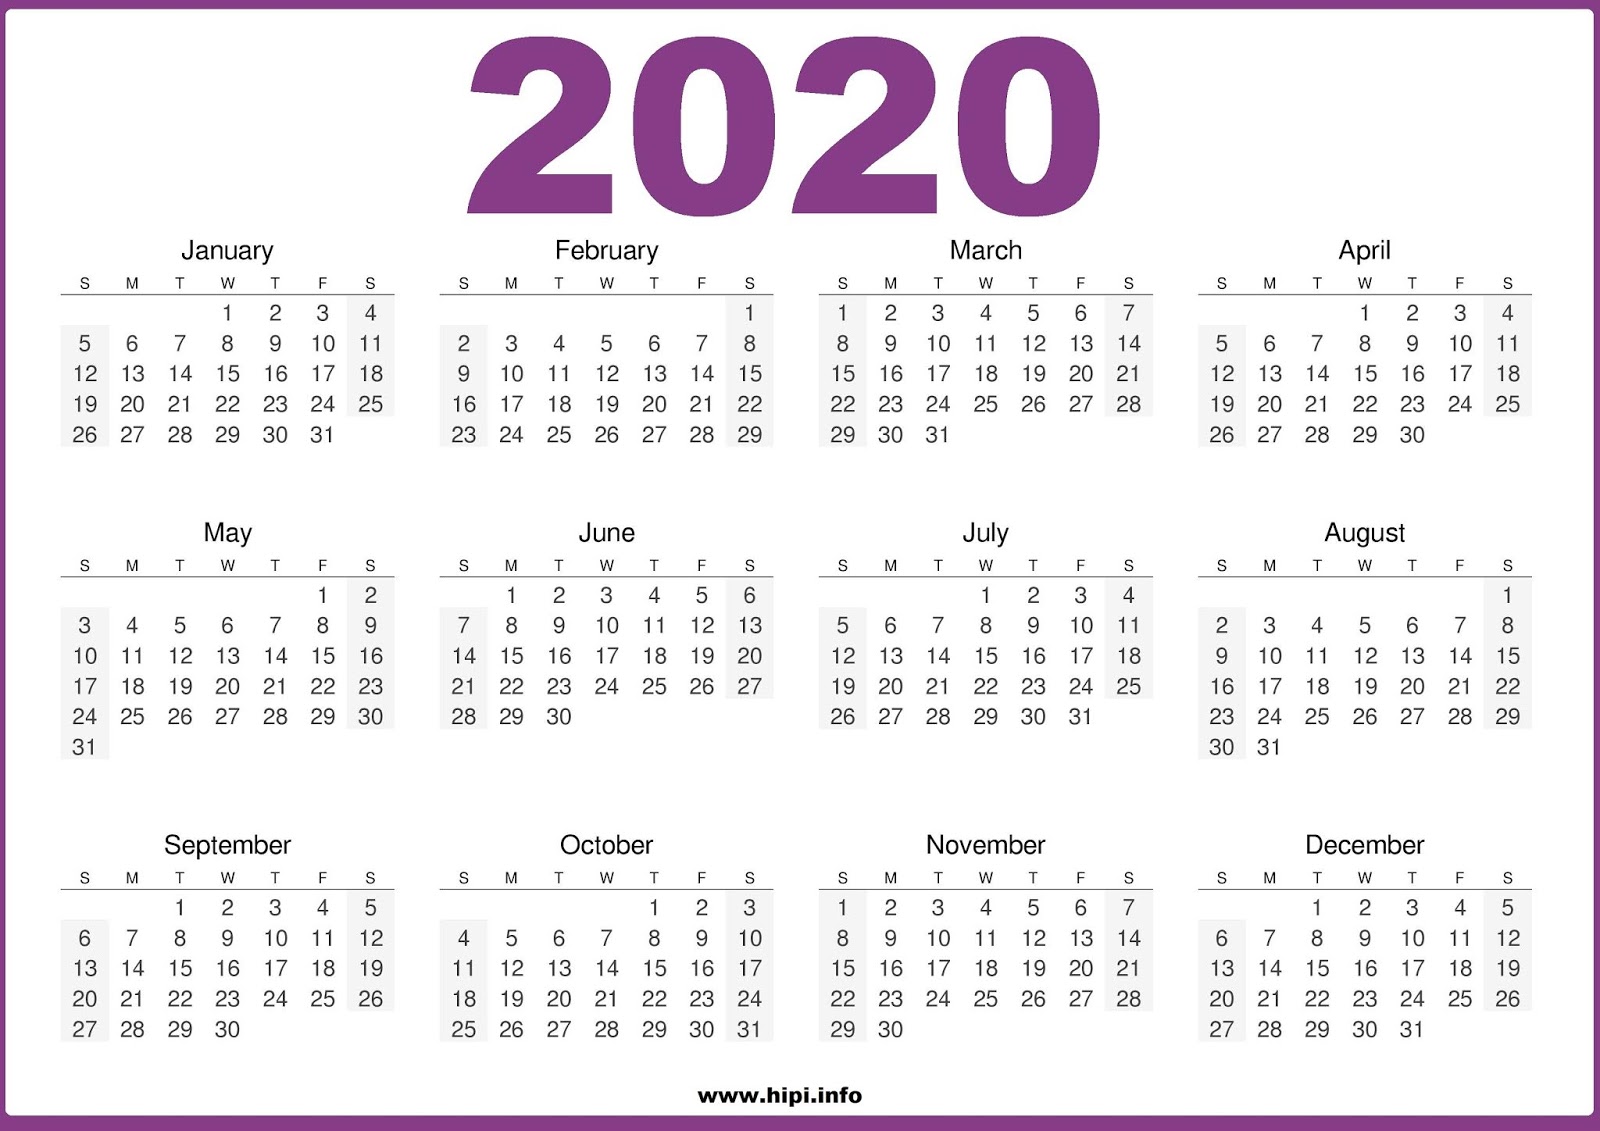 calendars-printable-twitter-headers-facebook-covers-wallpapers-2020-calendar-printable